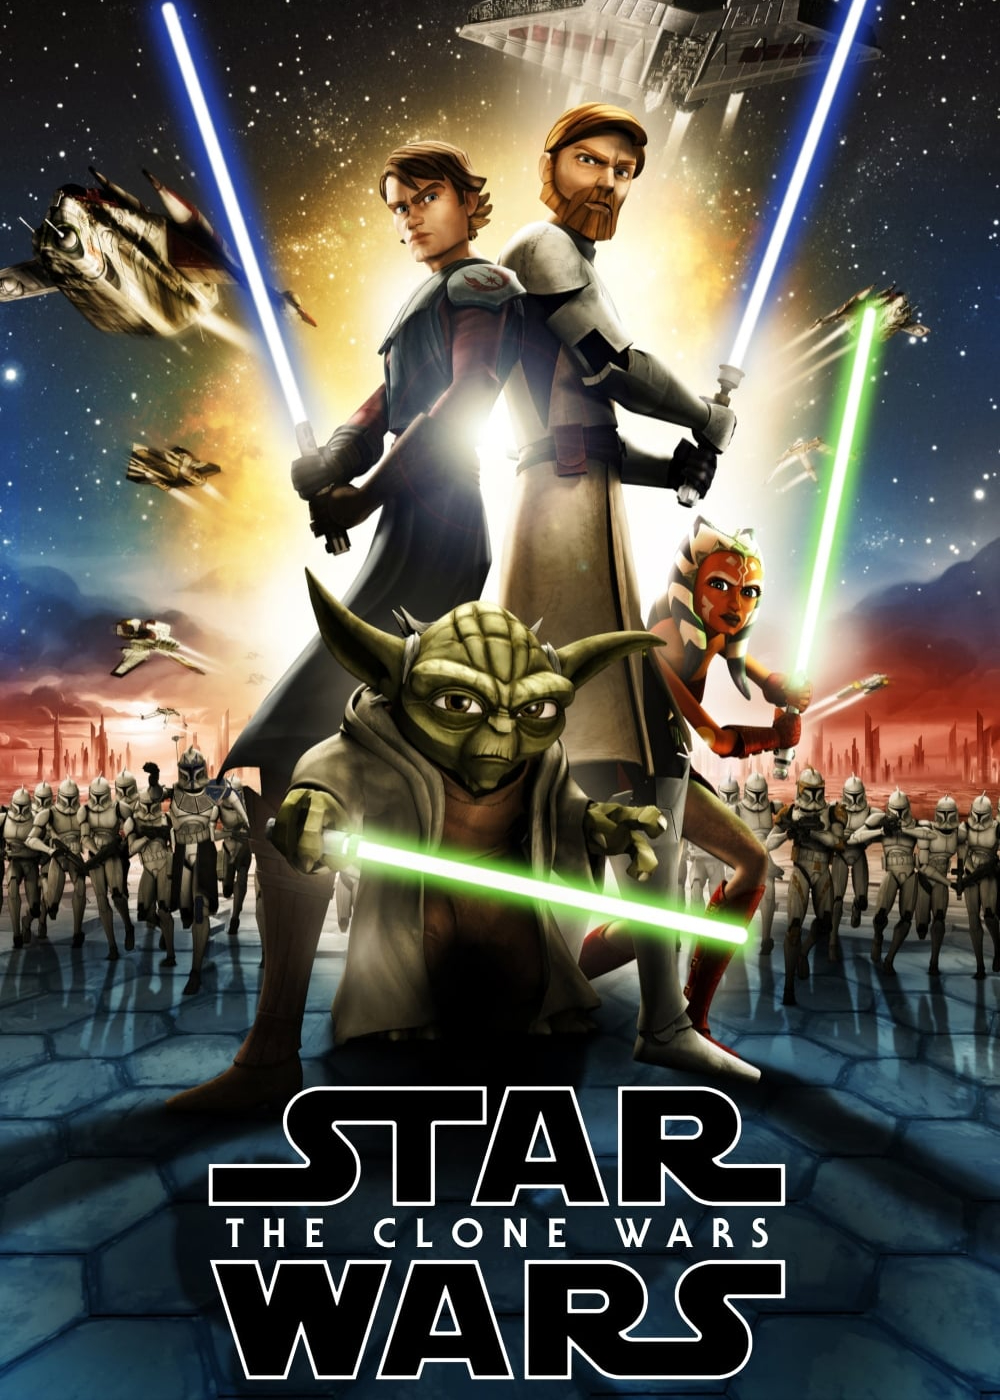 Star Wars: The Clone Wars (Star Wars: The Clone Wars) [2008]